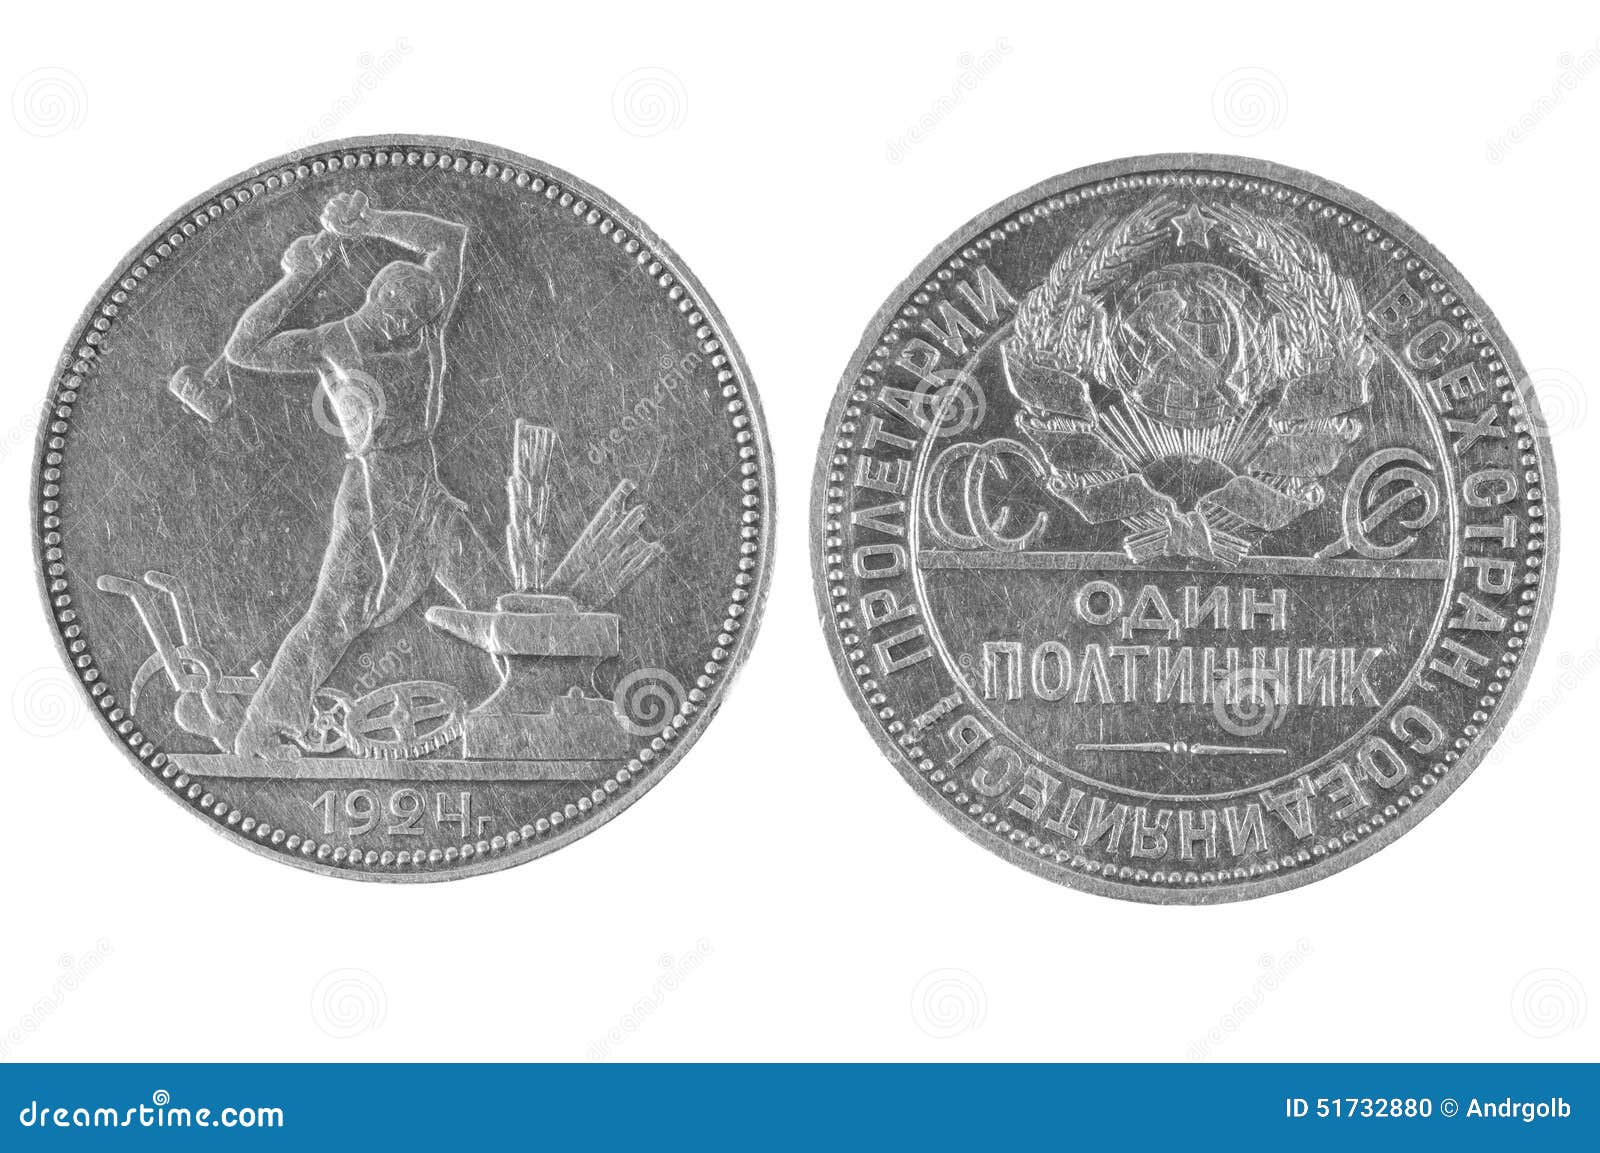 俄罗斯苏联1924年1卢布/银币/实物图-价格:1288元-se81177991-外国钱币-零售-7788收藏__收藏热线